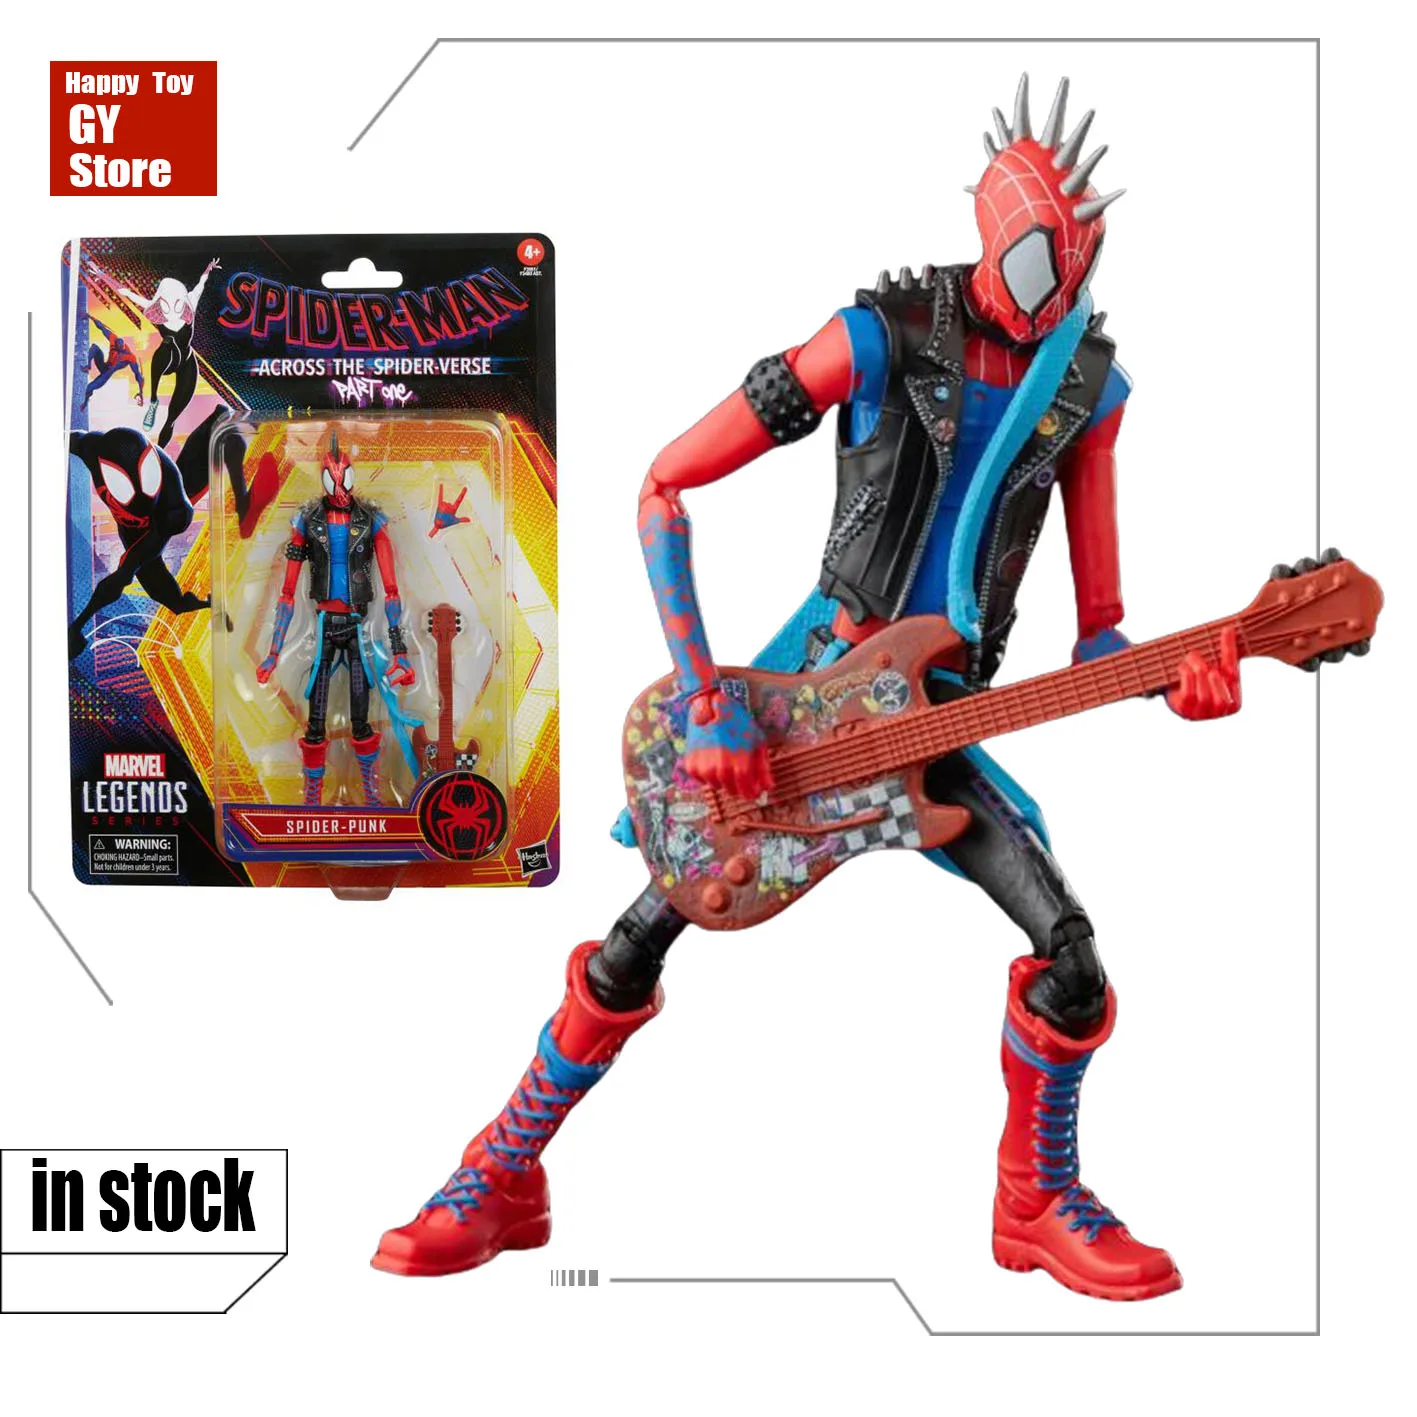 

Оригинальная серия Marvel Legends Across The Spider Verse Spider Punk экшн-фигурка 6 дюймов Коллекционная модель игрушка в подарок в наличии